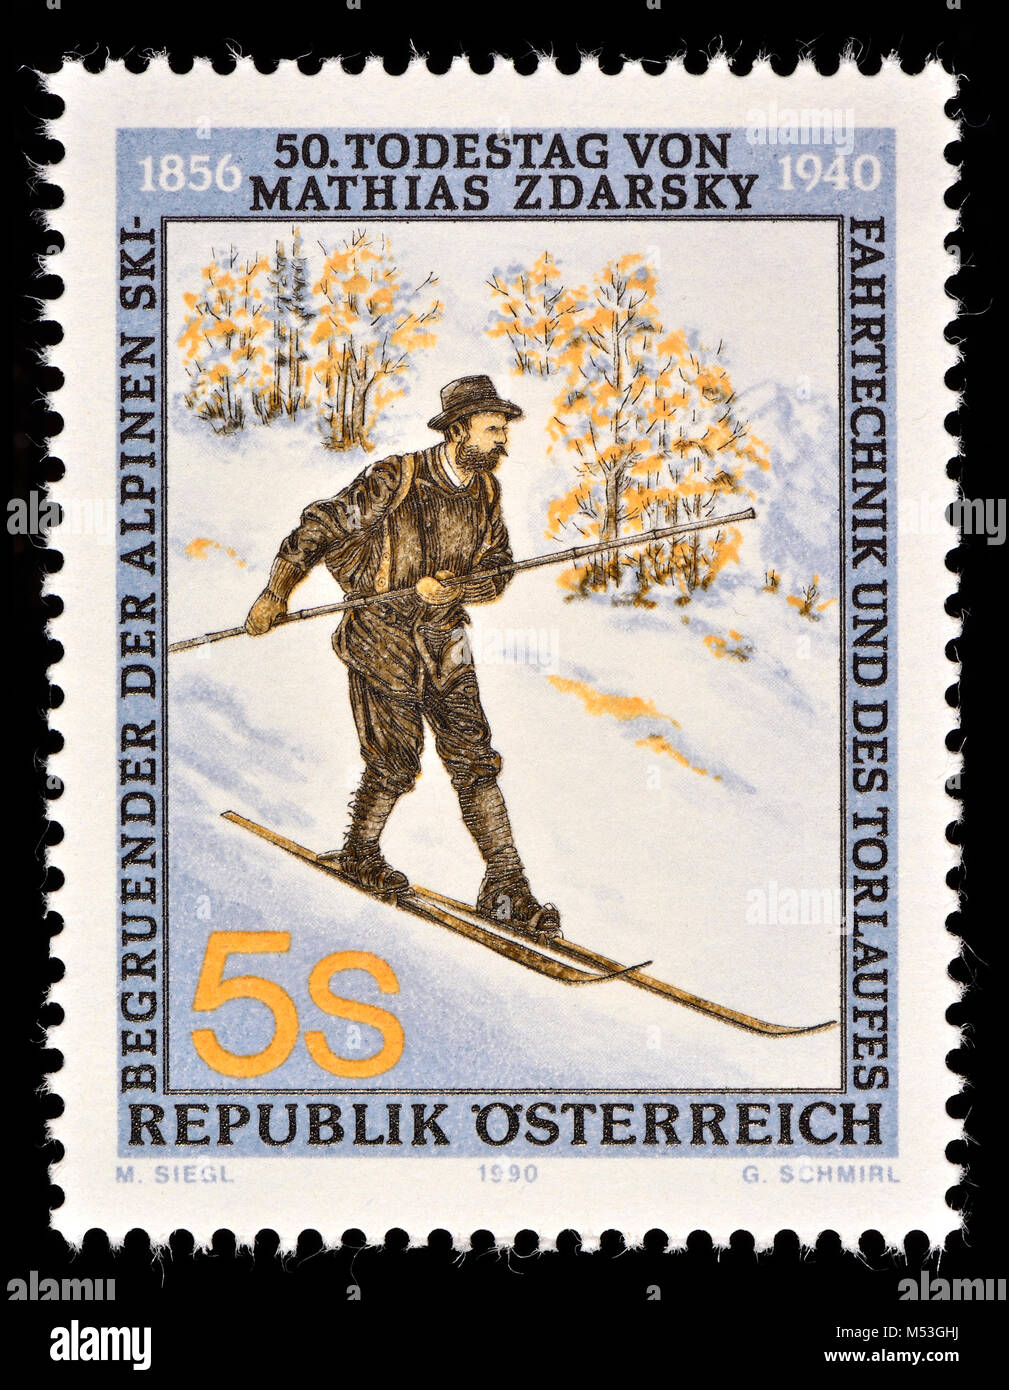 Timbre autrichien (1990) : Mathias Zdarsky (1856-1940) début pionnier de ski et considéré comme l'un des fondateurs de la technique de ski alpin moderne. Au Banque D'Images